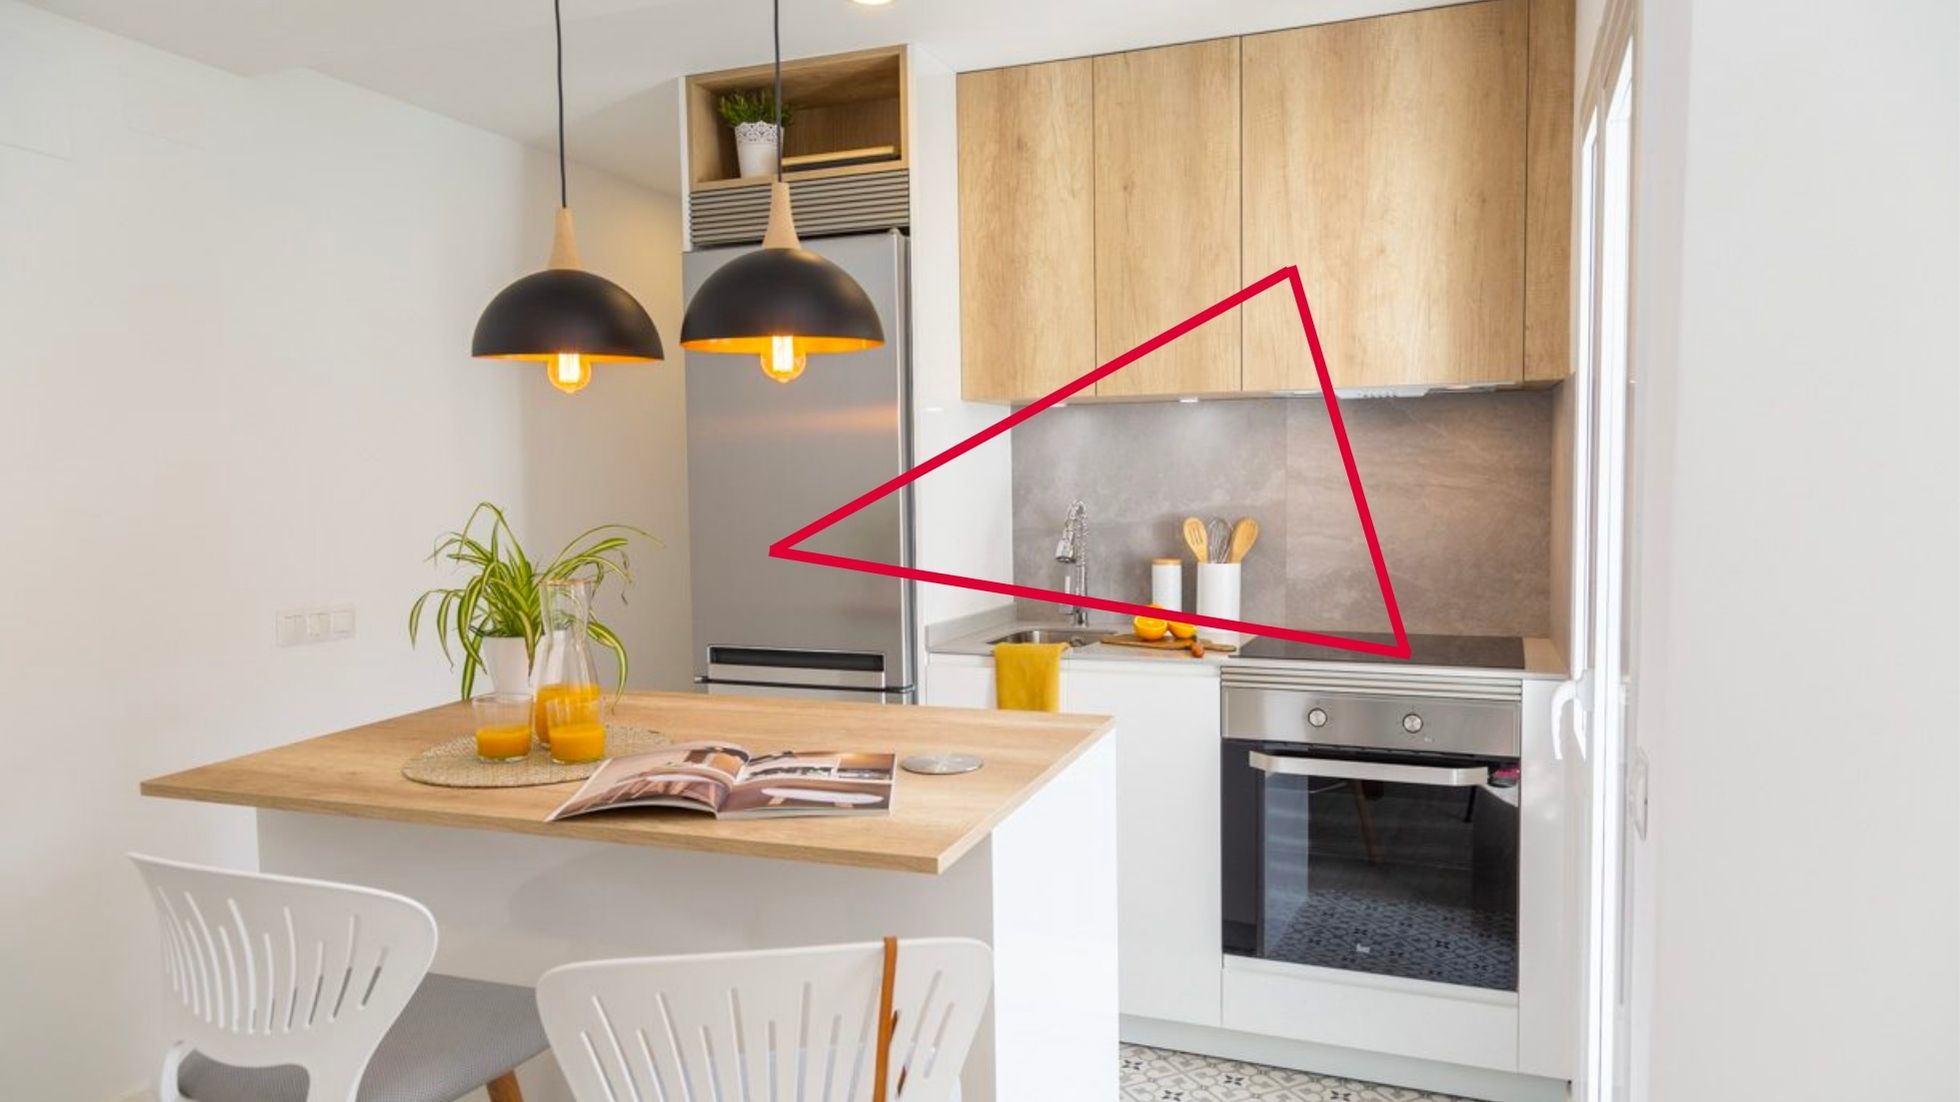 Una cocina pequeña de estilo nórdico en forma de línea. Aunque tiene una isla, todo el triangulo de trabajo se señala en el frente